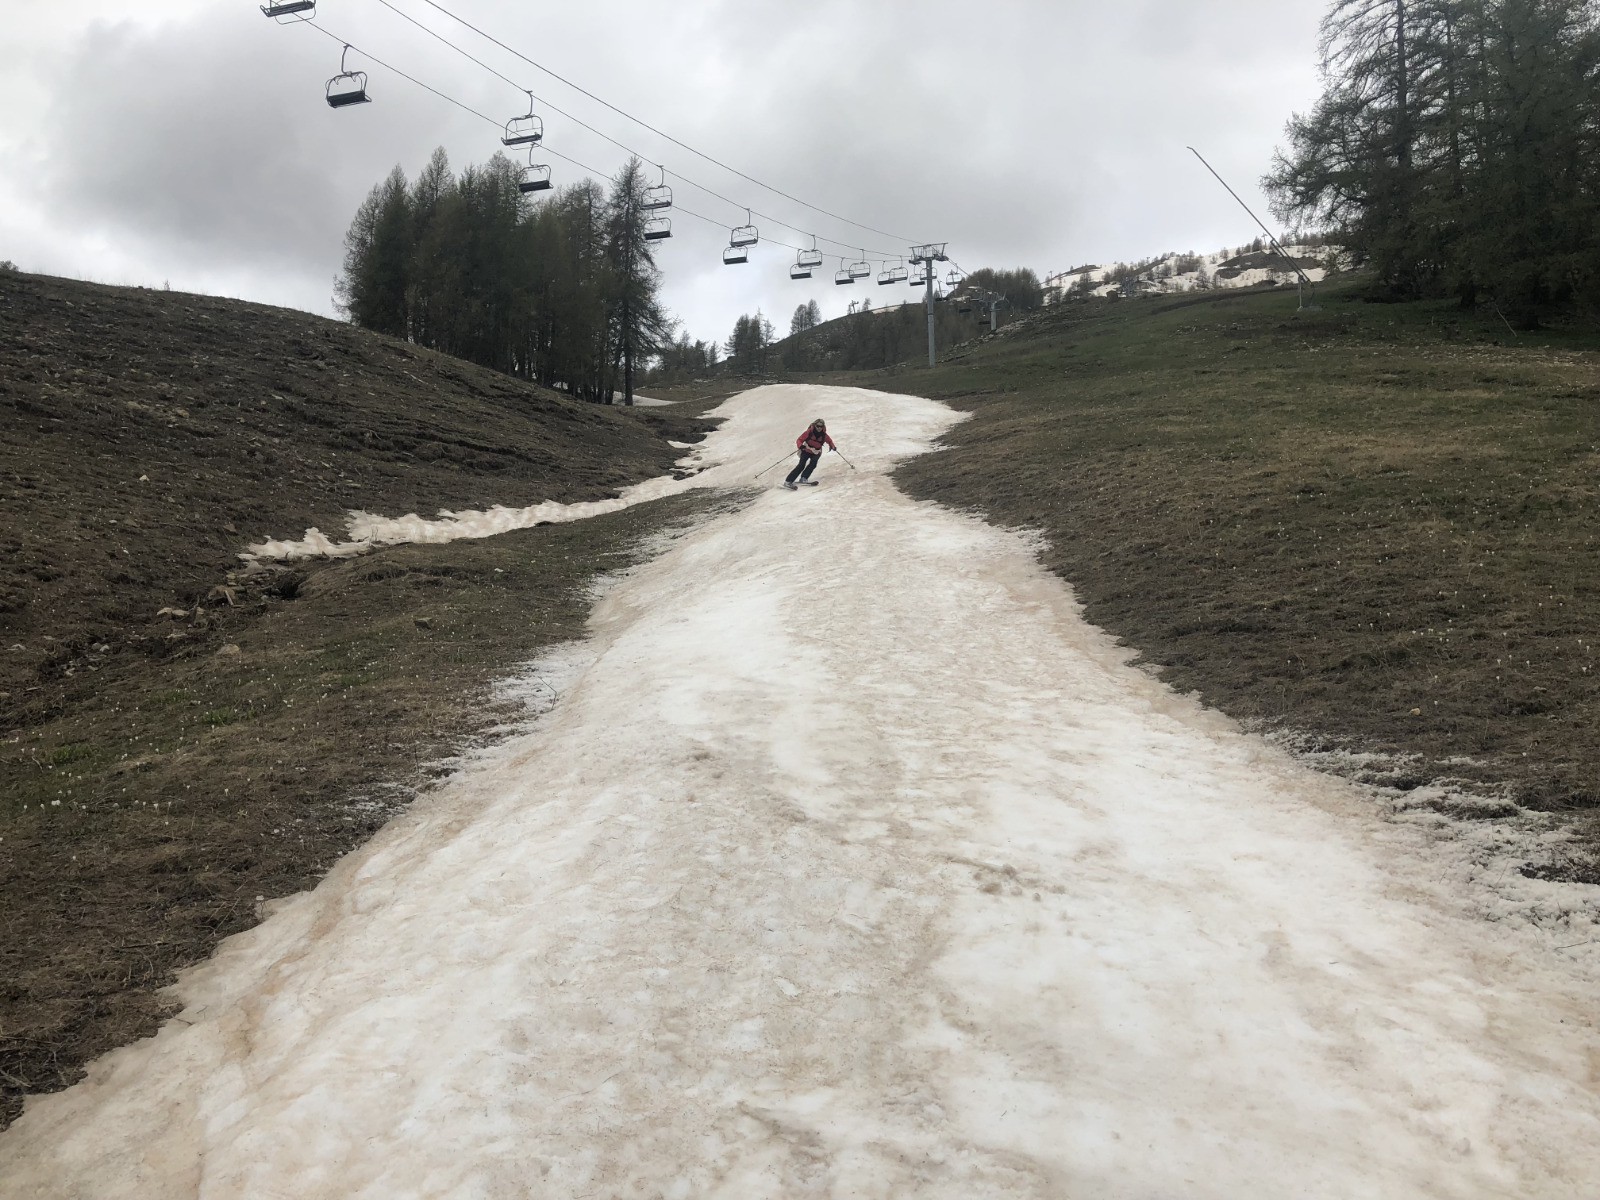 La langue neigeuse nous permet de skier jusqu'en bas